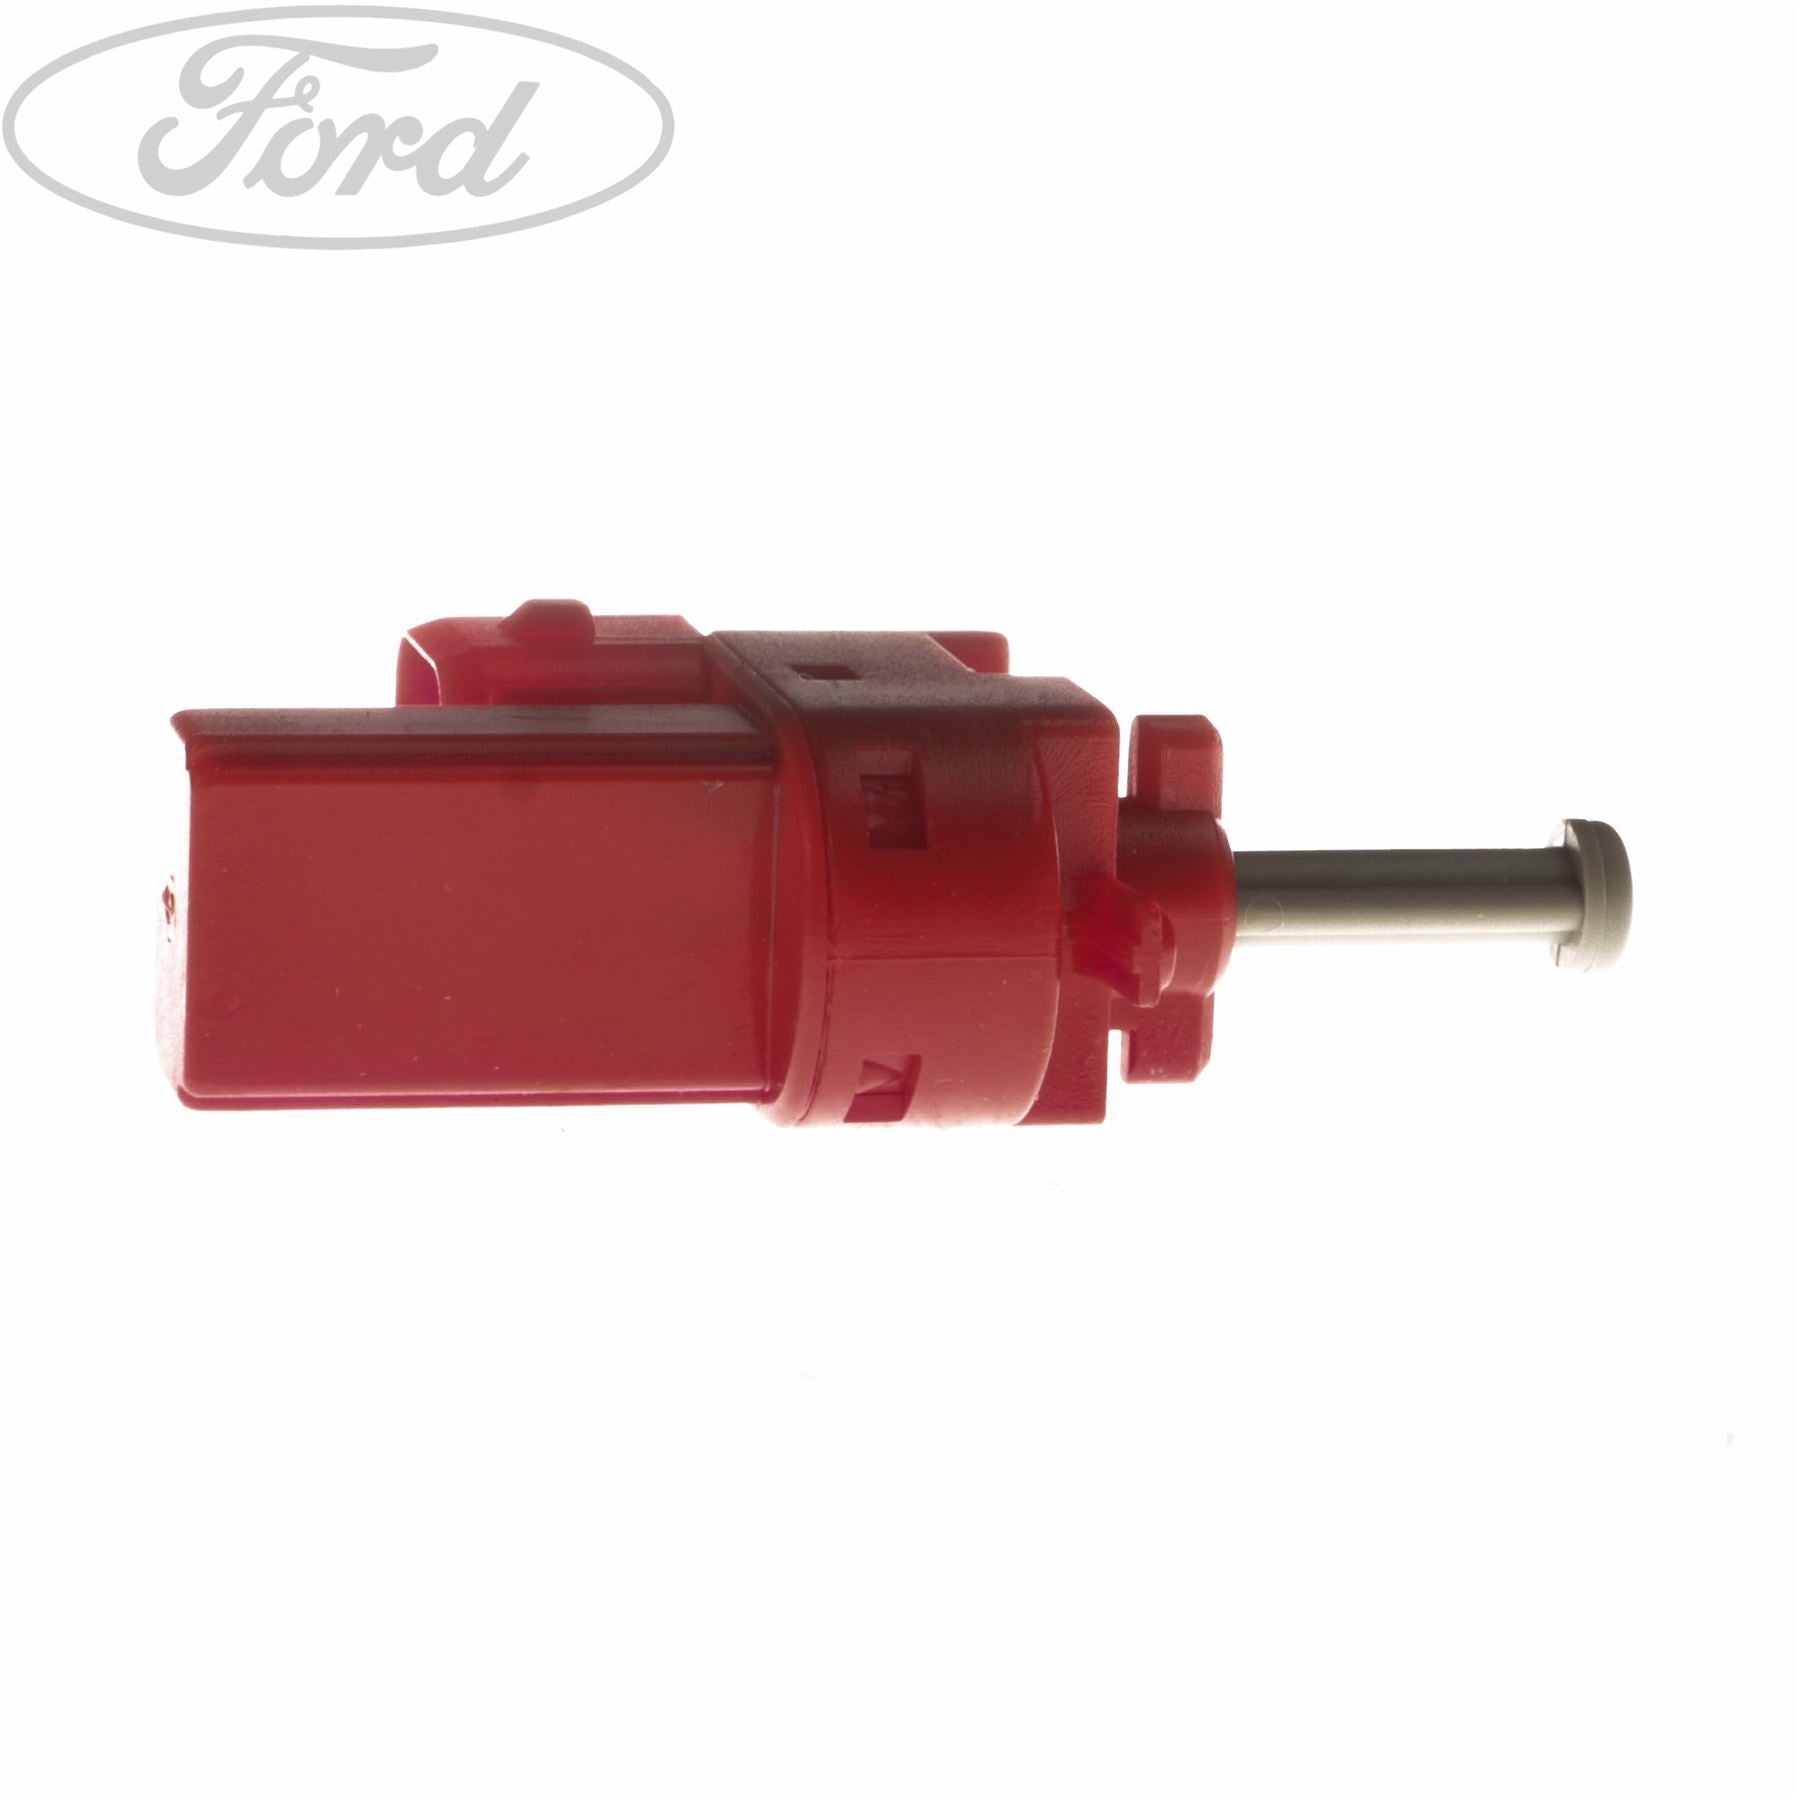 5-Gang für Ford Focus Fiesta C-max Mondeo Automatik-Schaltknauf  Getriebegriff Hebel Schalter Stabkopf Auto Interieur-Teile